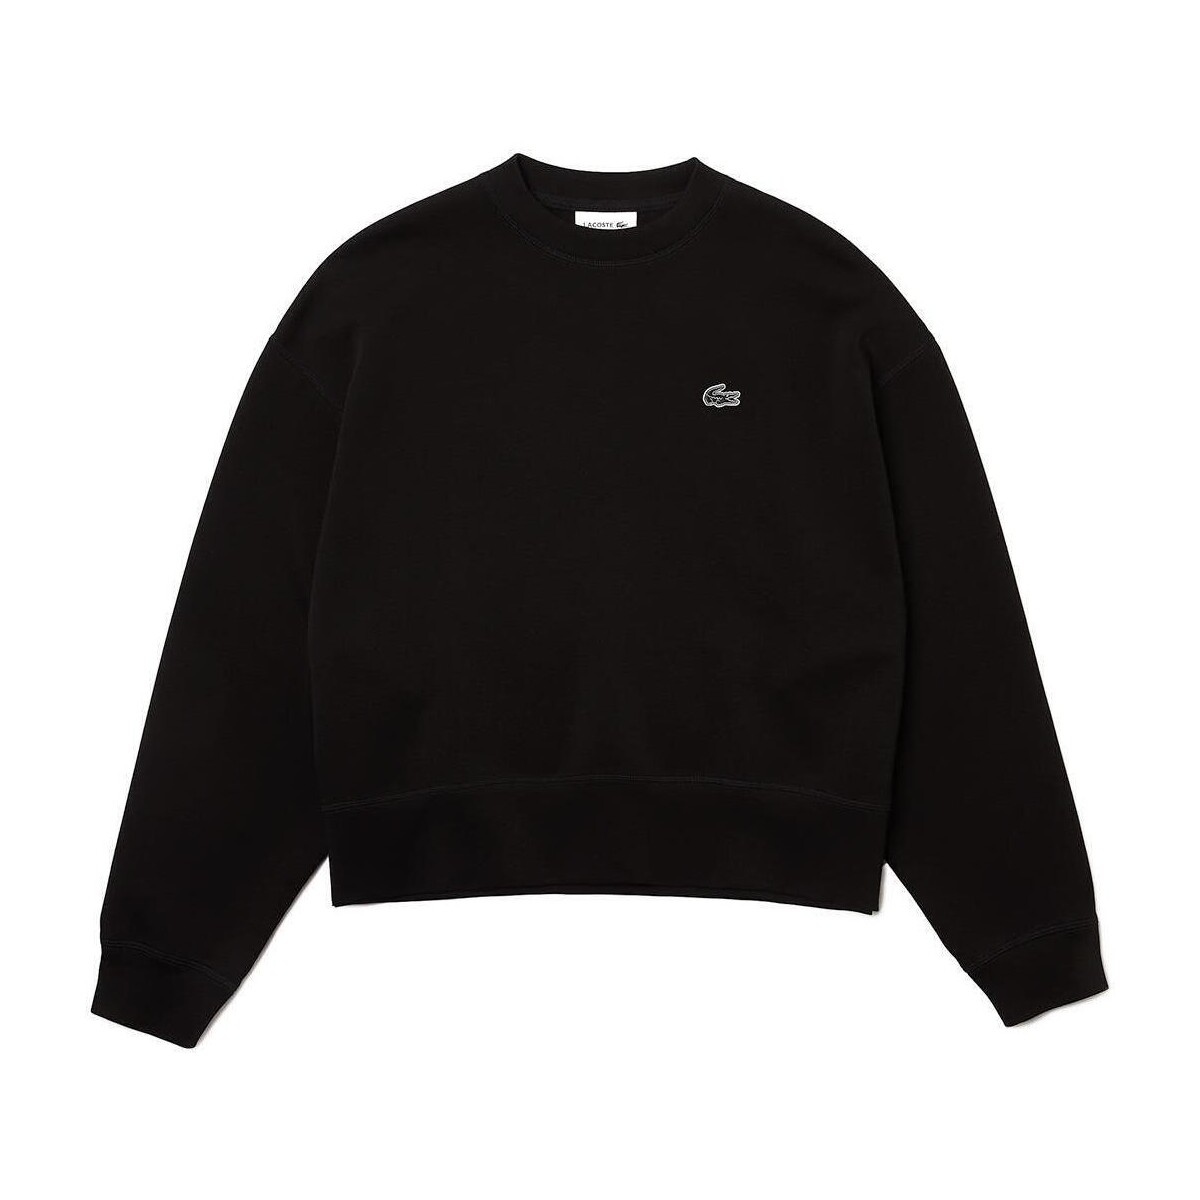 Textiel Dames Sweaters / Sweatshirts Lacoste  Zwart